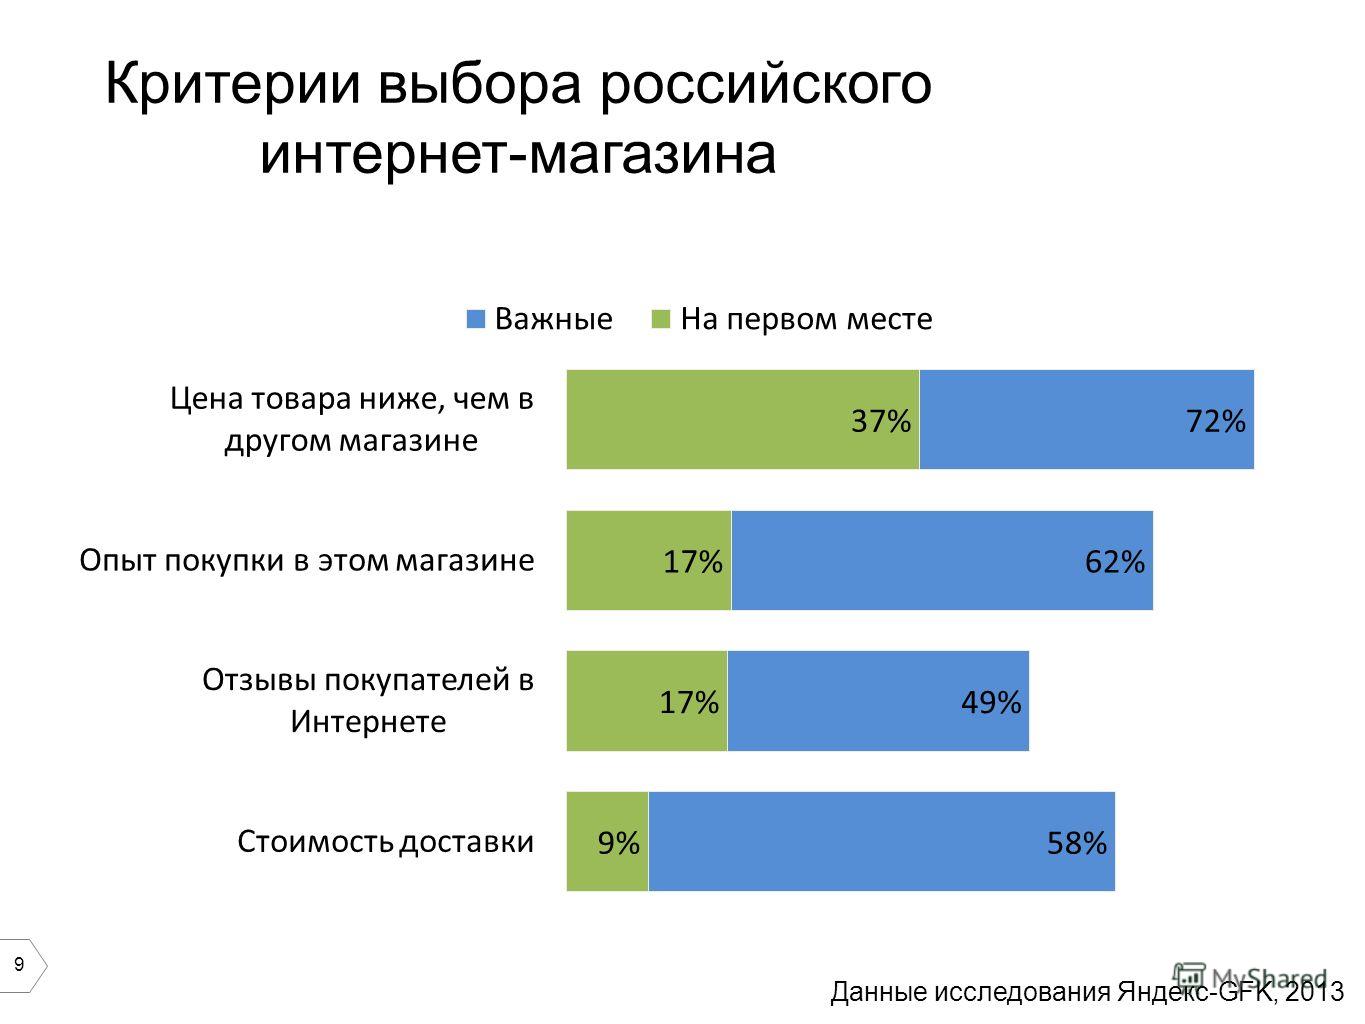 9 Критерии выбора российского интернет-магазина Данные исследования Яндекс-GFK, 2013